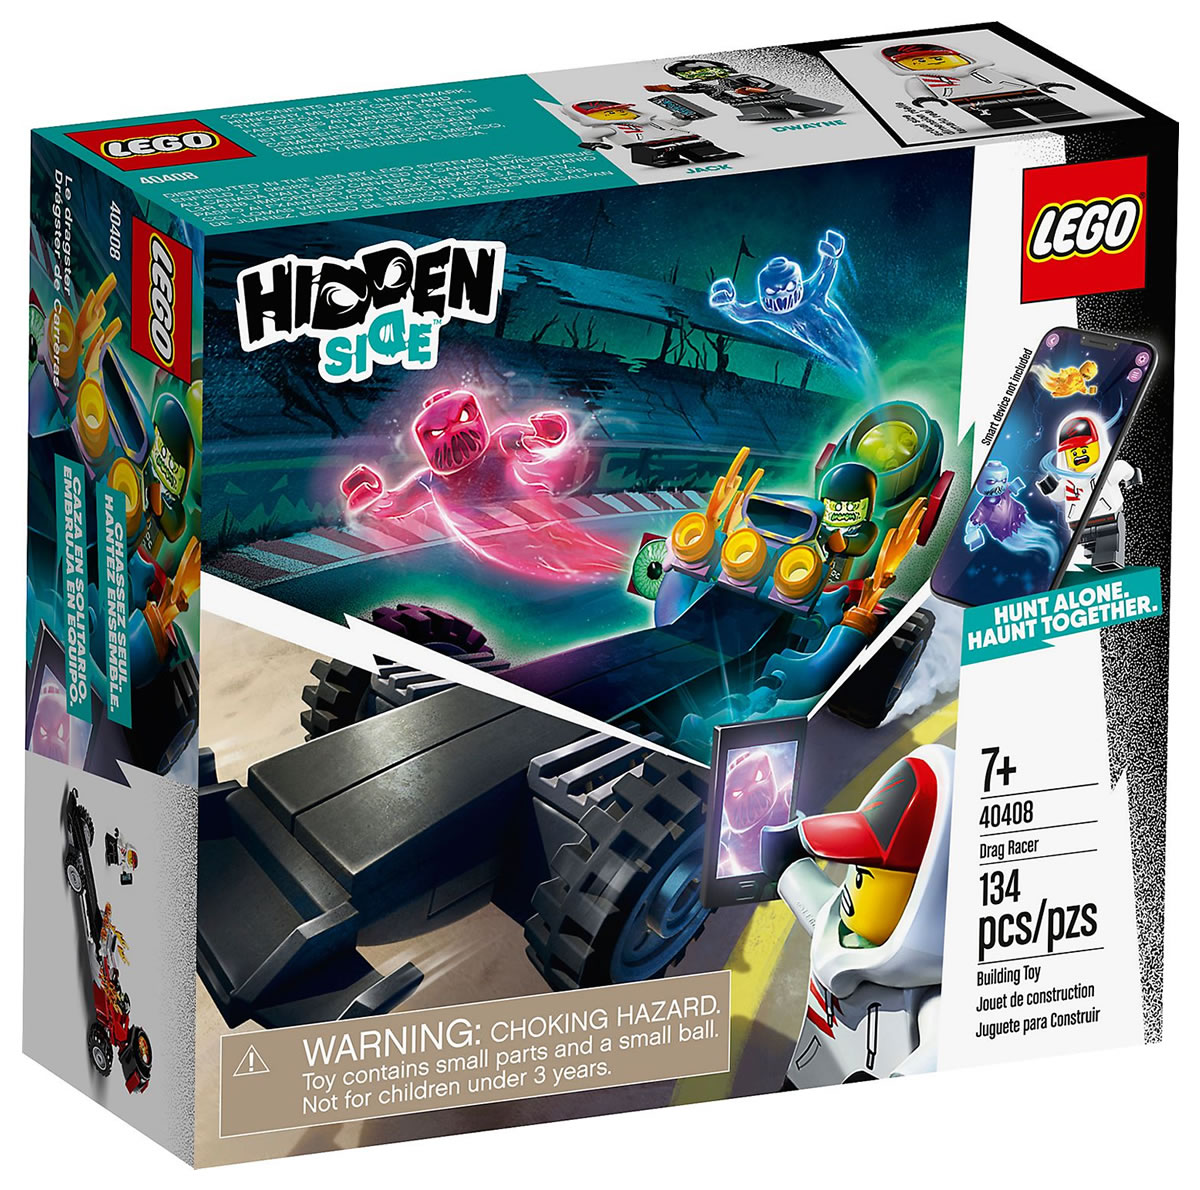 lego-hidden-side-40408-drag-racer-box-2020 zusammengebaut.com